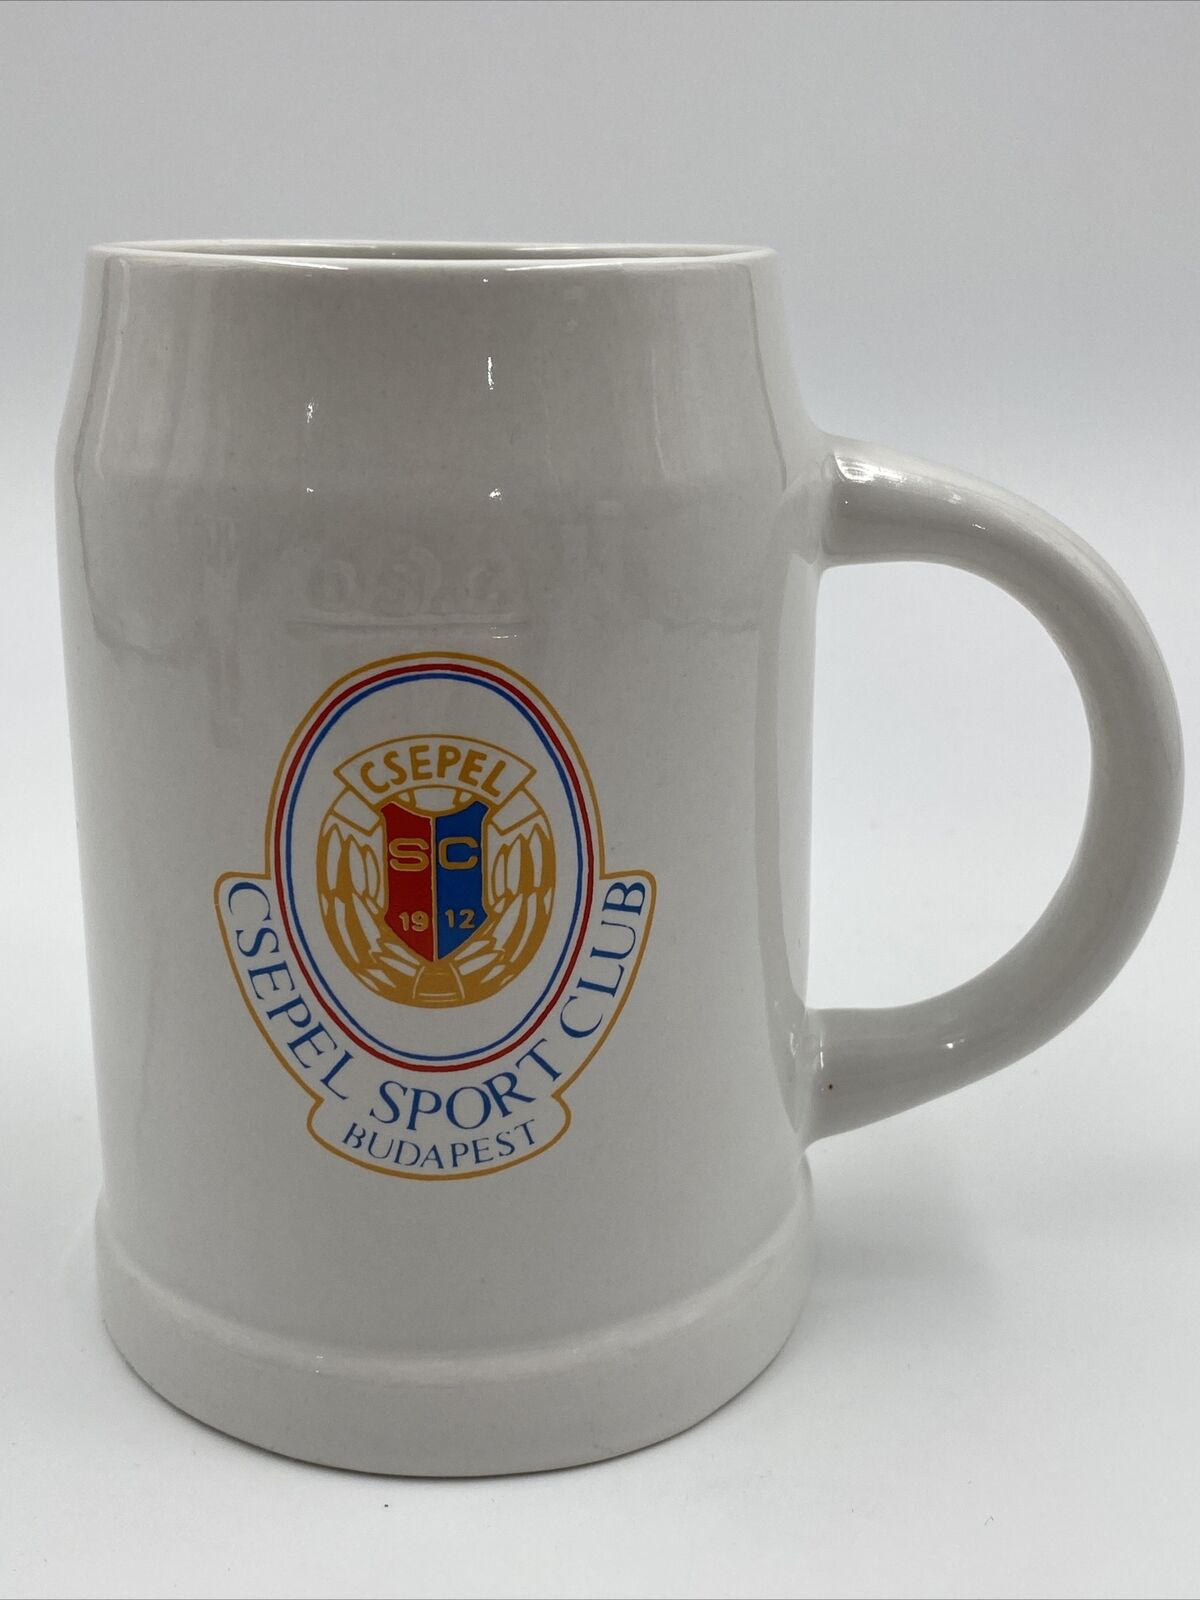 Vintage Csepel Sport Club Budapest Hungary Beer Mug